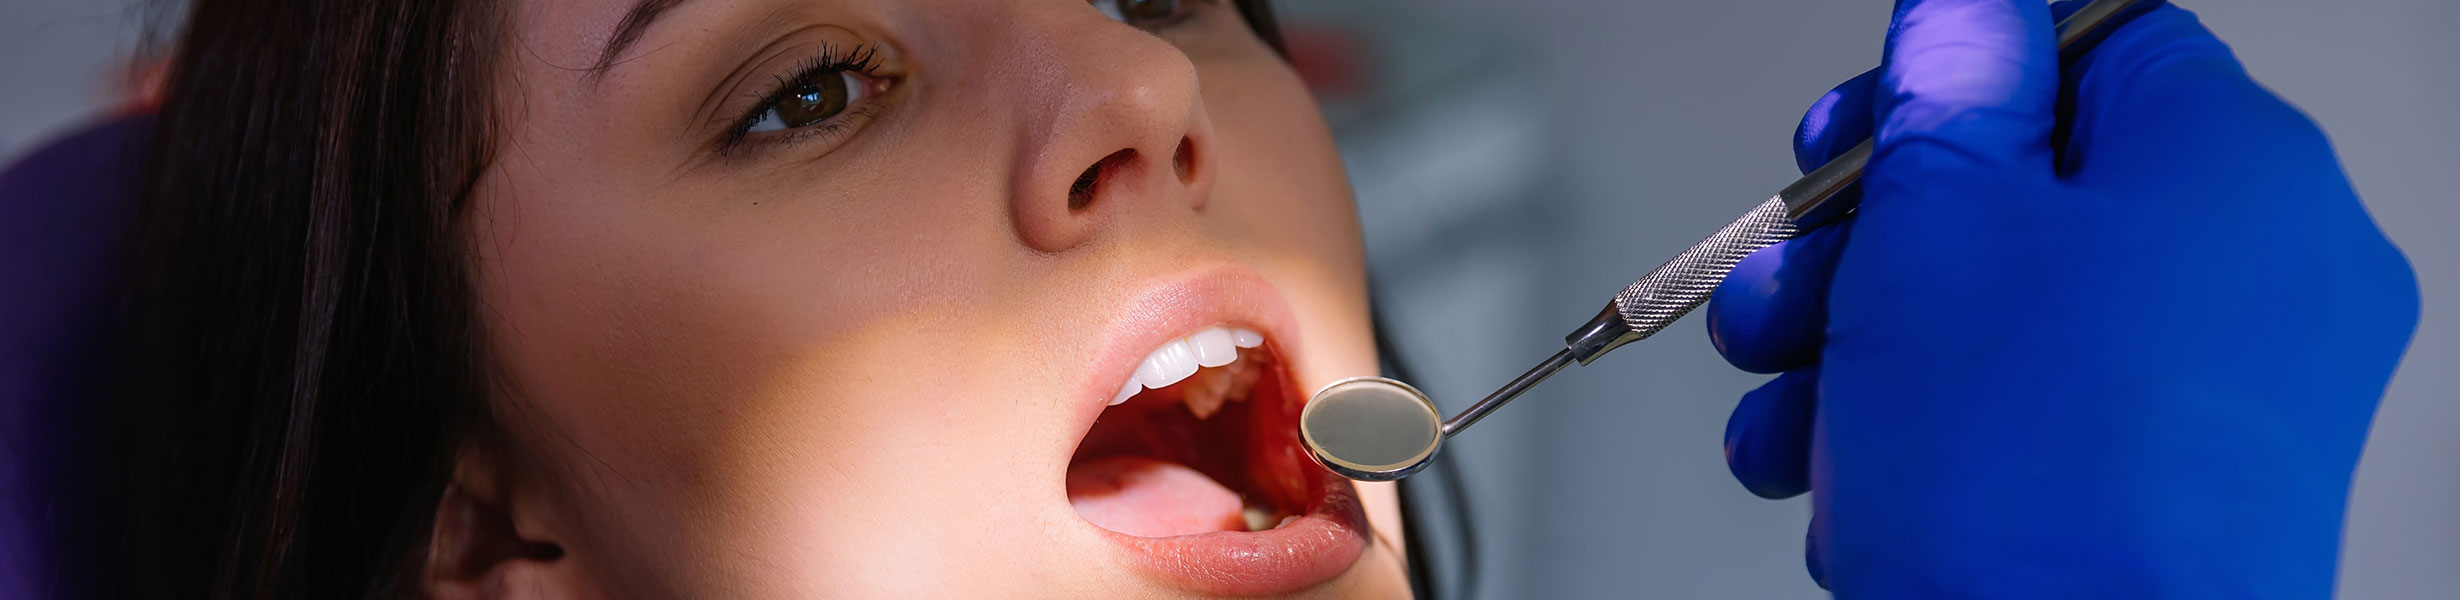 Woman at the dental